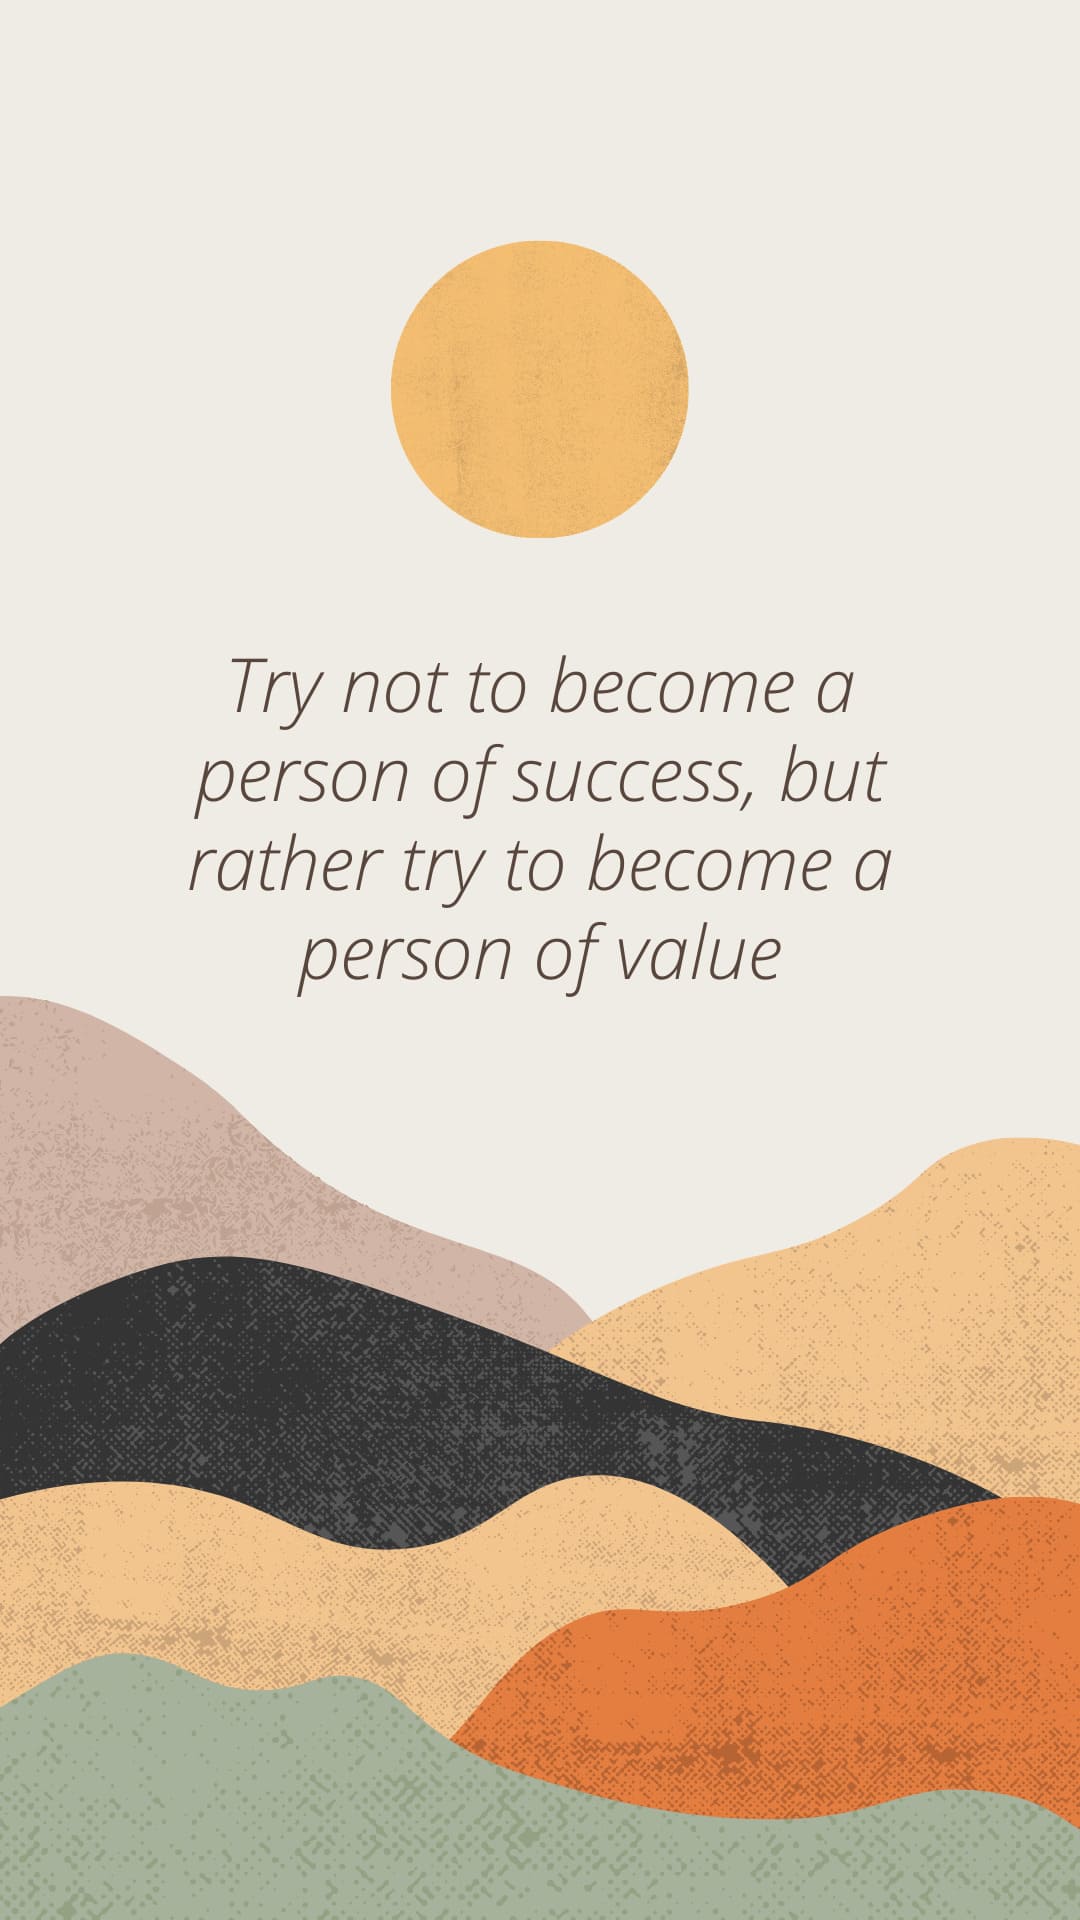 Intenta no convertirte en una persona de exito sino trata de convertirte en una persona de valor.